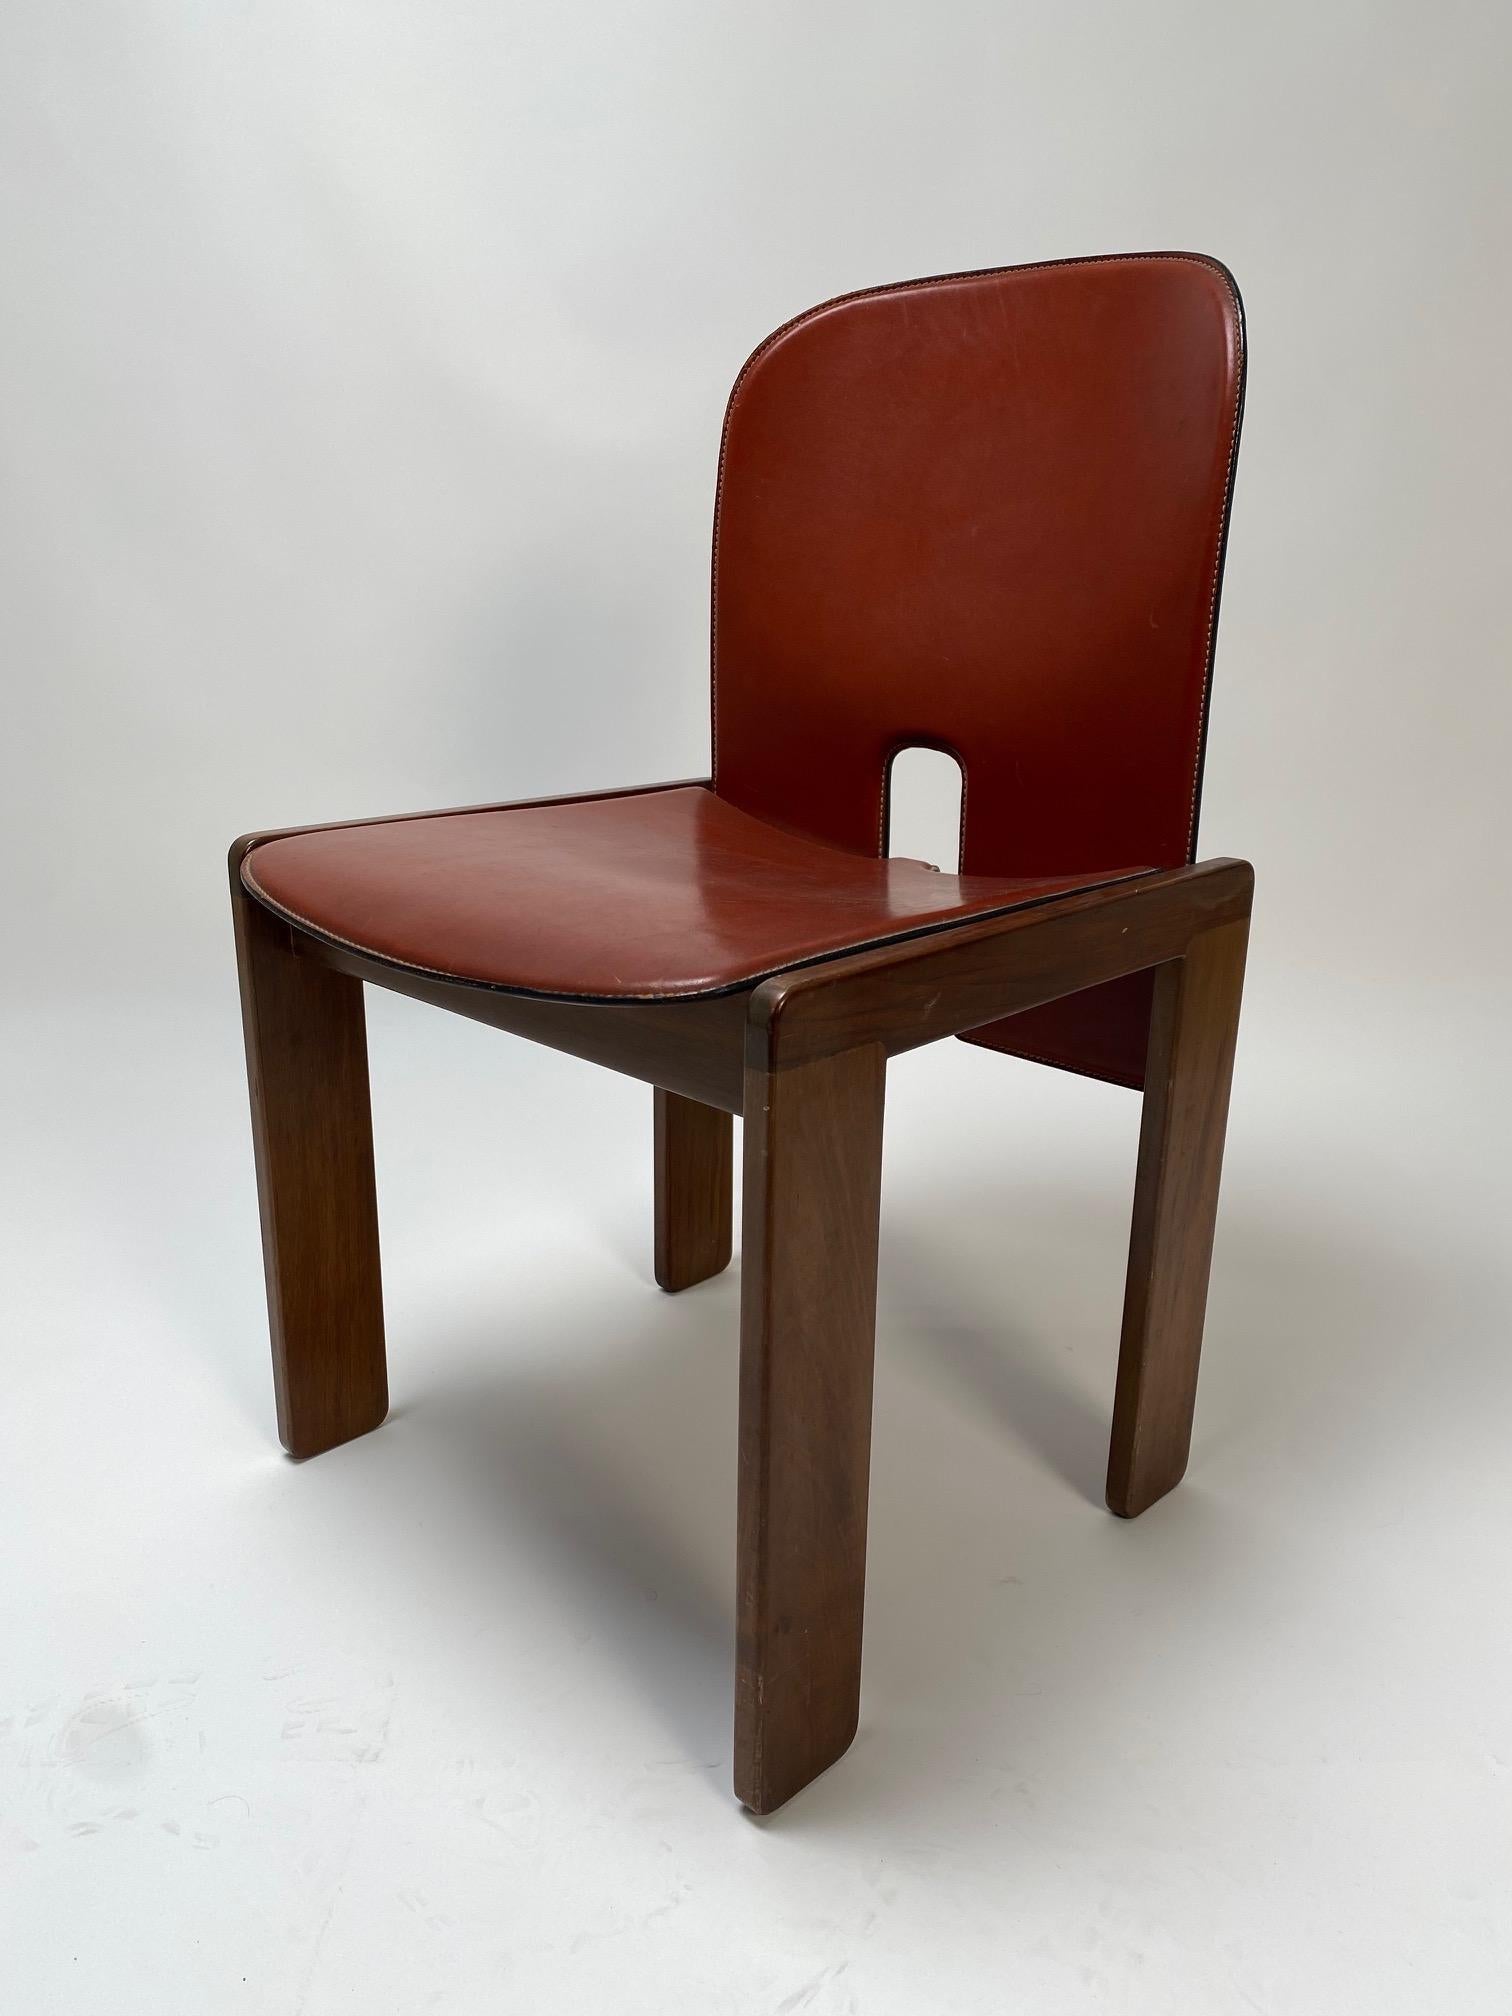 Afra und Tobia Scarpa, Satz von 10 Stühlen aus Leder und Holz für Cassina, Italien, 1967.

Er ist eine der Ikonen des italienischen Designs, ein perfektes Möbelstück, das als Esszimmerstuhl, aber auch für das Arbeitszimmer oder Büro verwendet